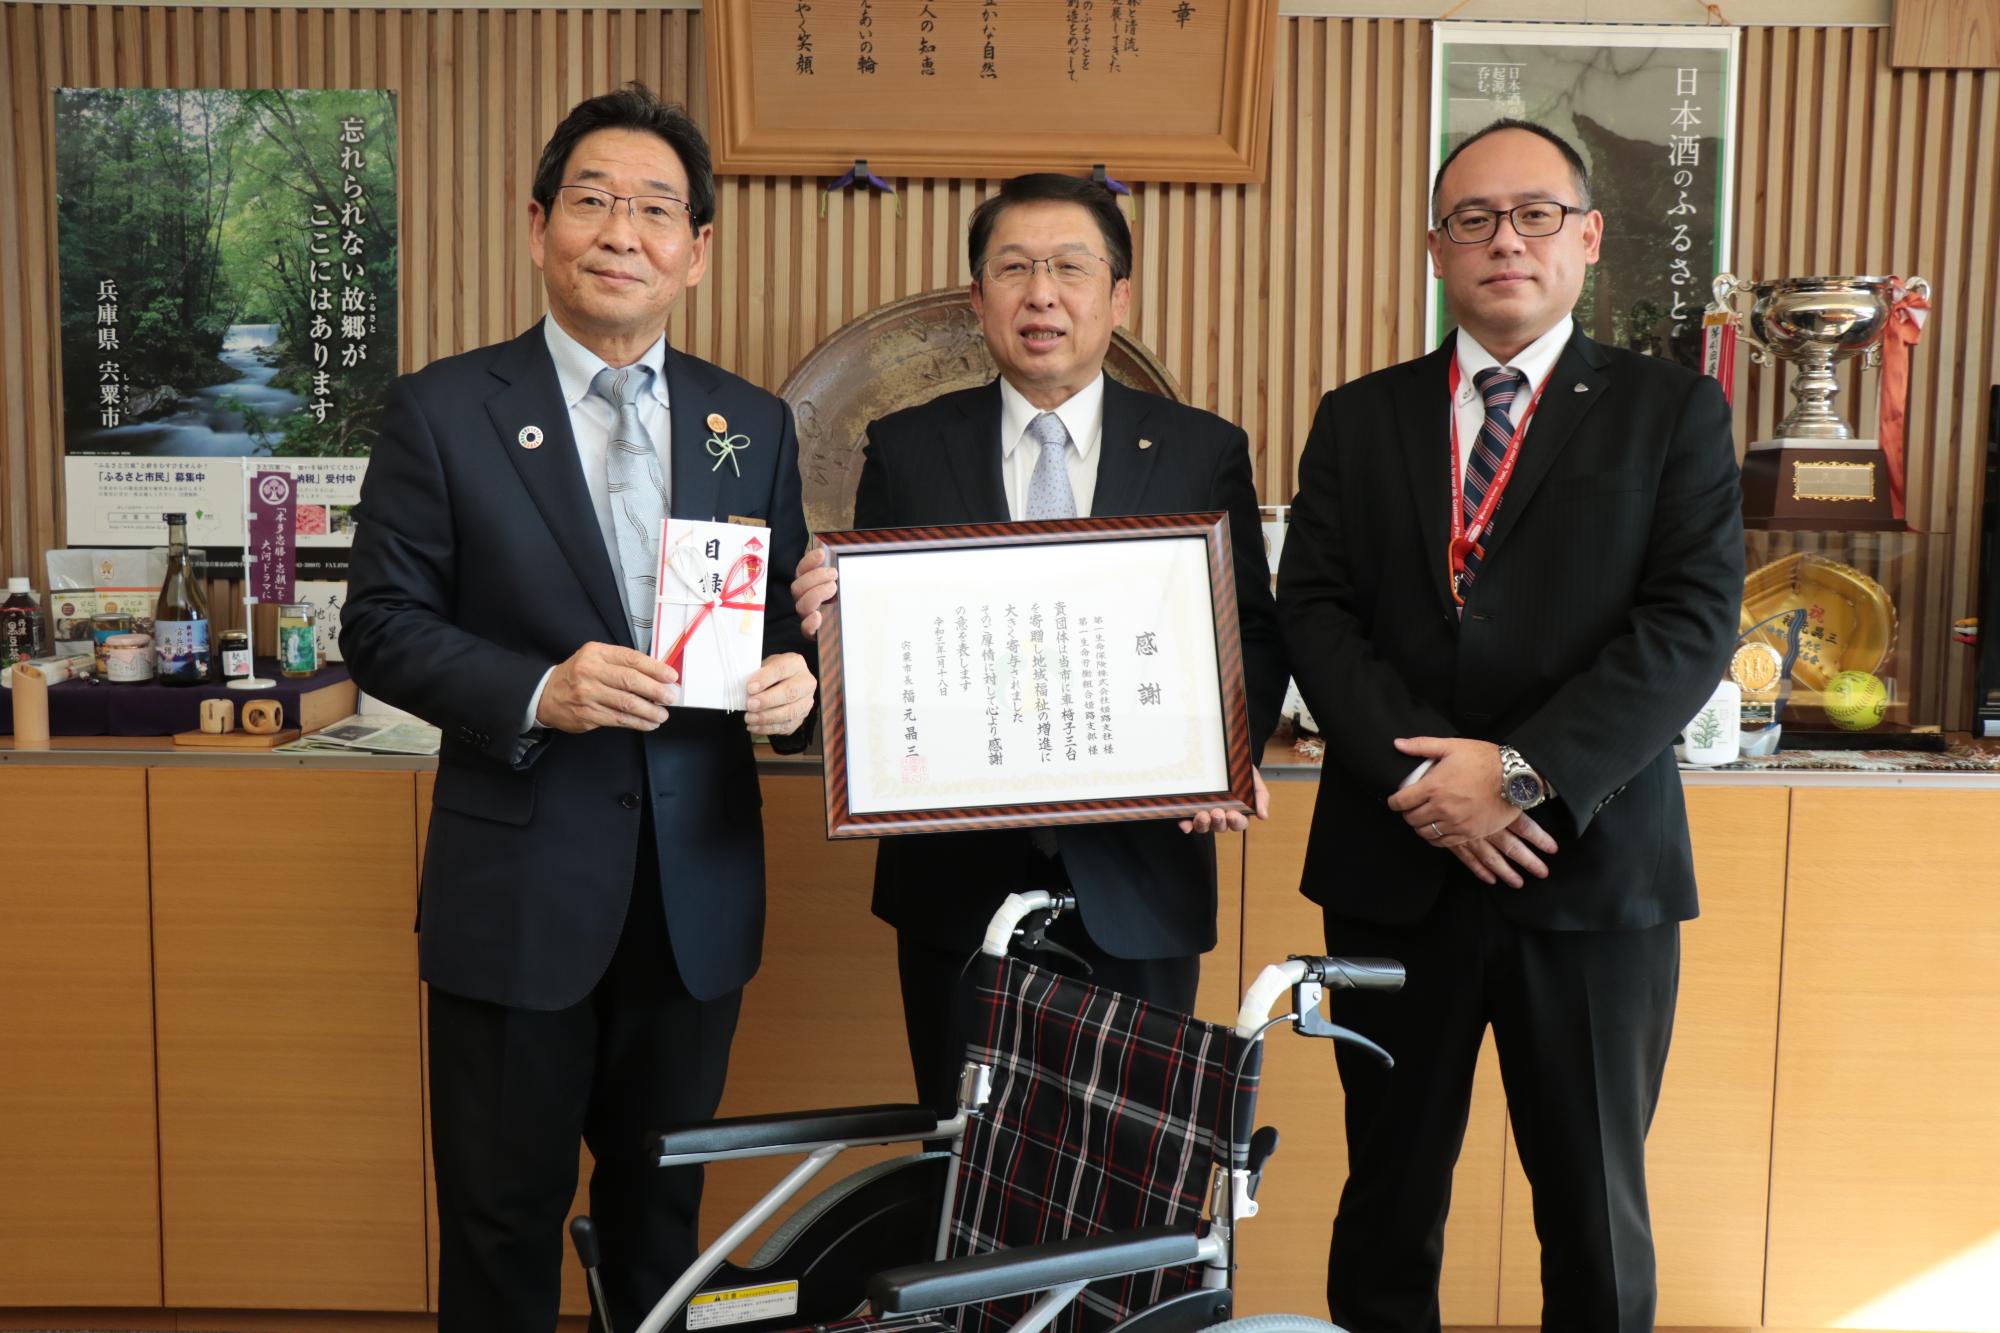 車椅子1台を中心に、左から福元市長、第一生命保険姫路支社支社長の池本昌永さん、営業部長の新谷喜一さんの写真